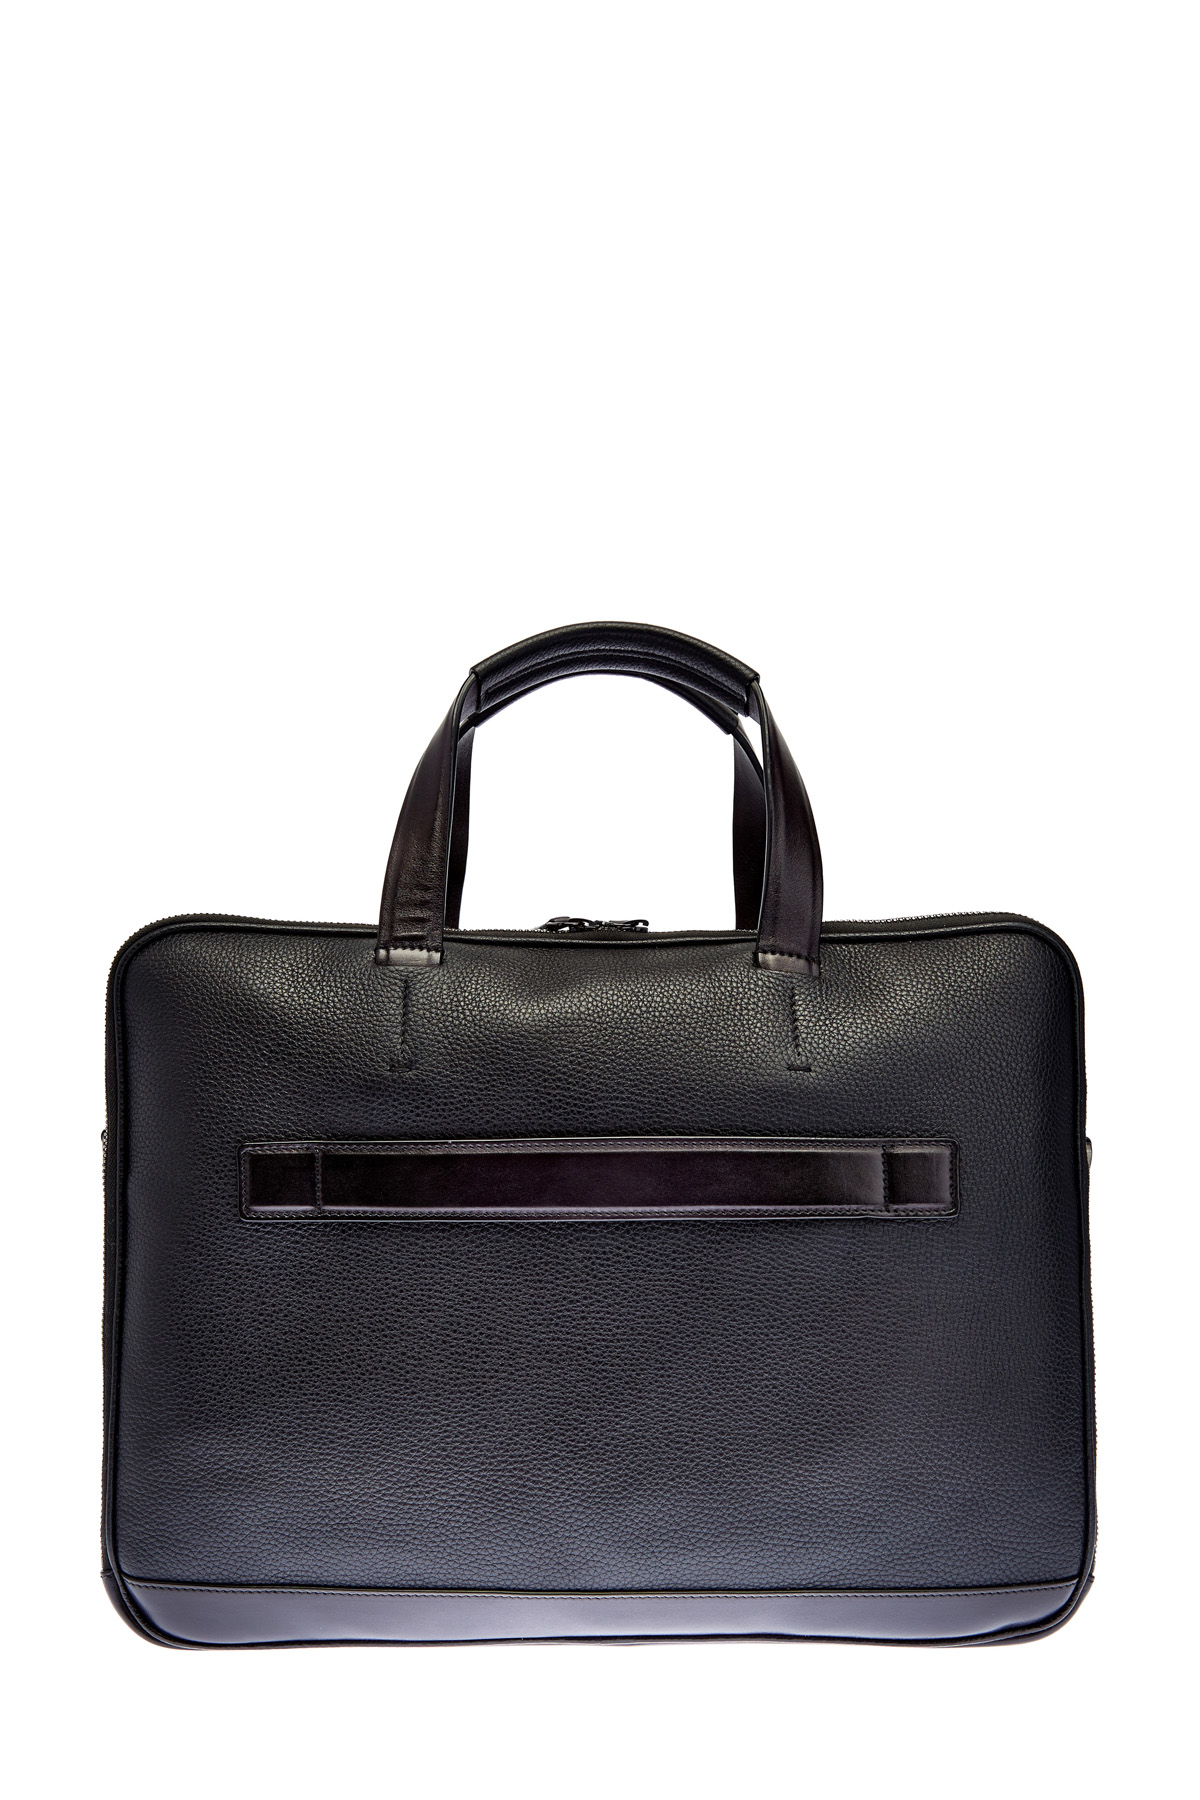 Кожаная сумка с карманом для бумаг А4 и съемным плечевым ремнем SANTONI, цвет черный, размер 36;38.5 - фото 5